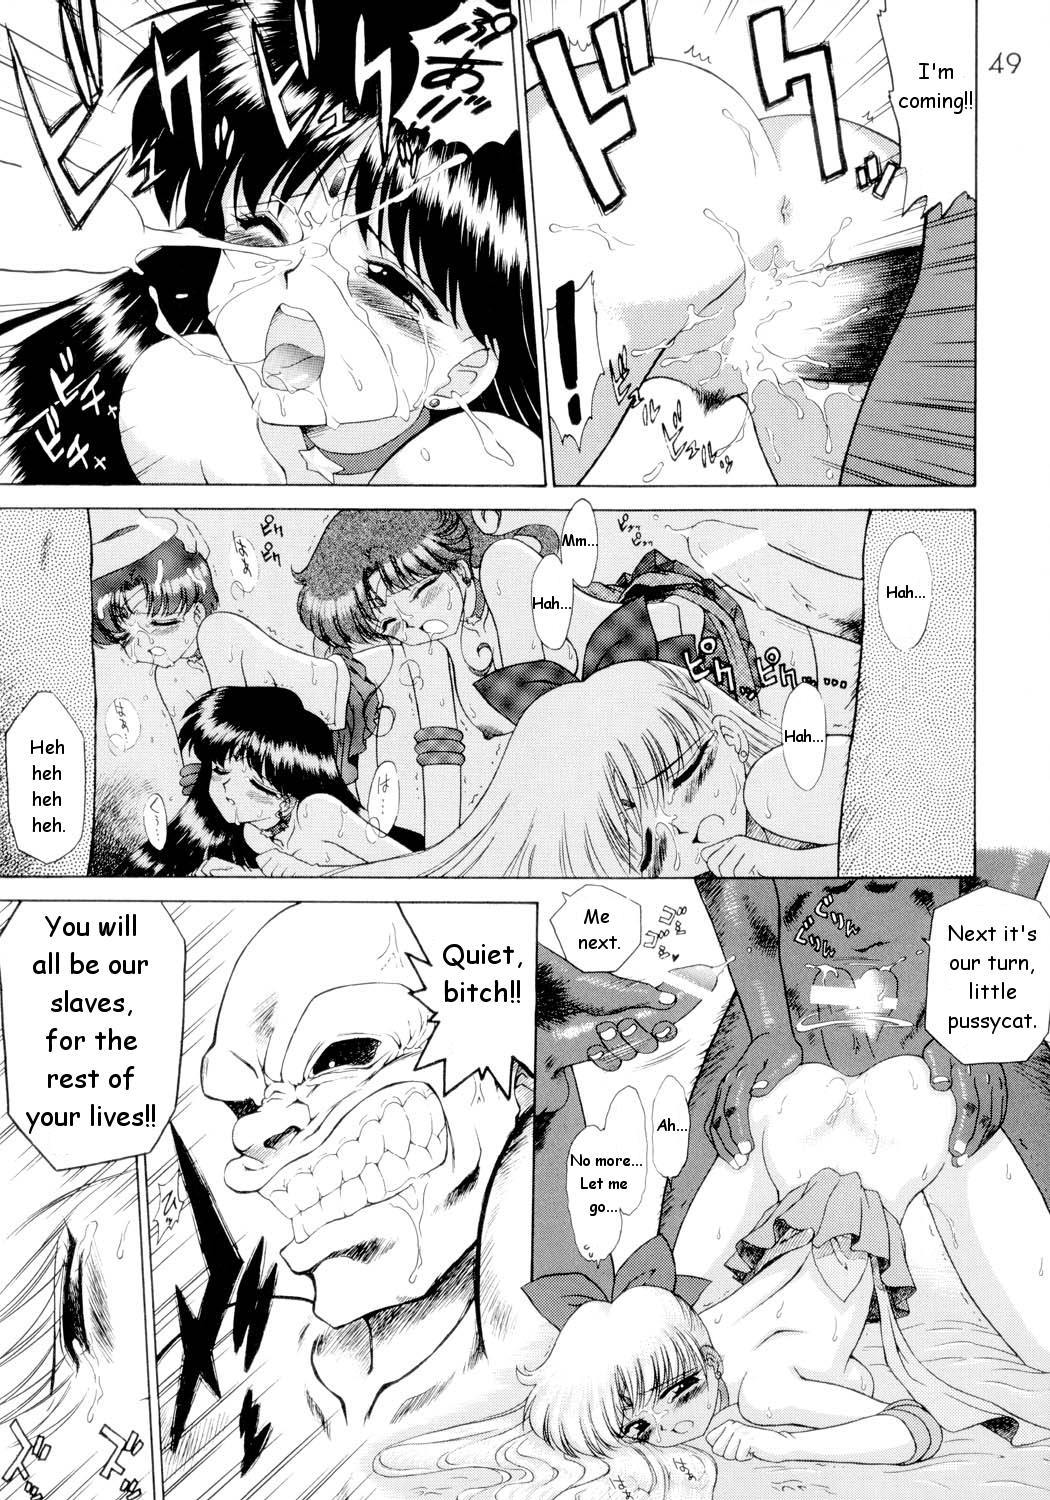 Submission Sailorstars sailor moon 47 hentai manga